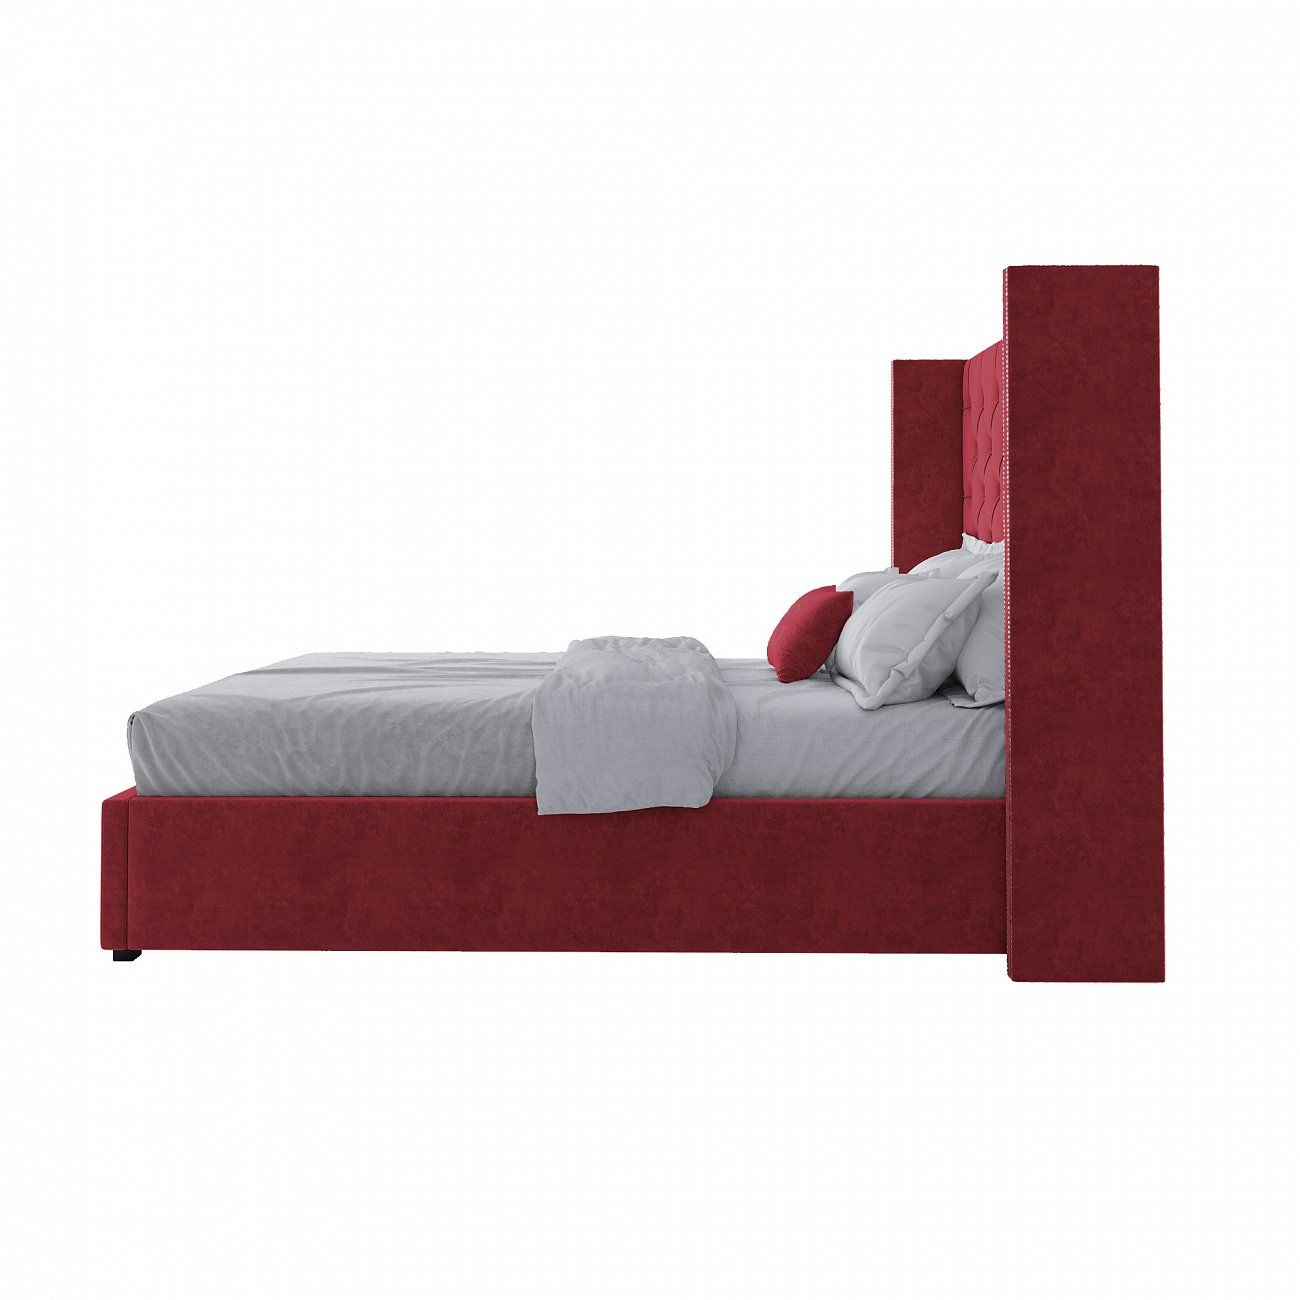 Кровать подростковая 140х200 см красная с гвоздиками Wing